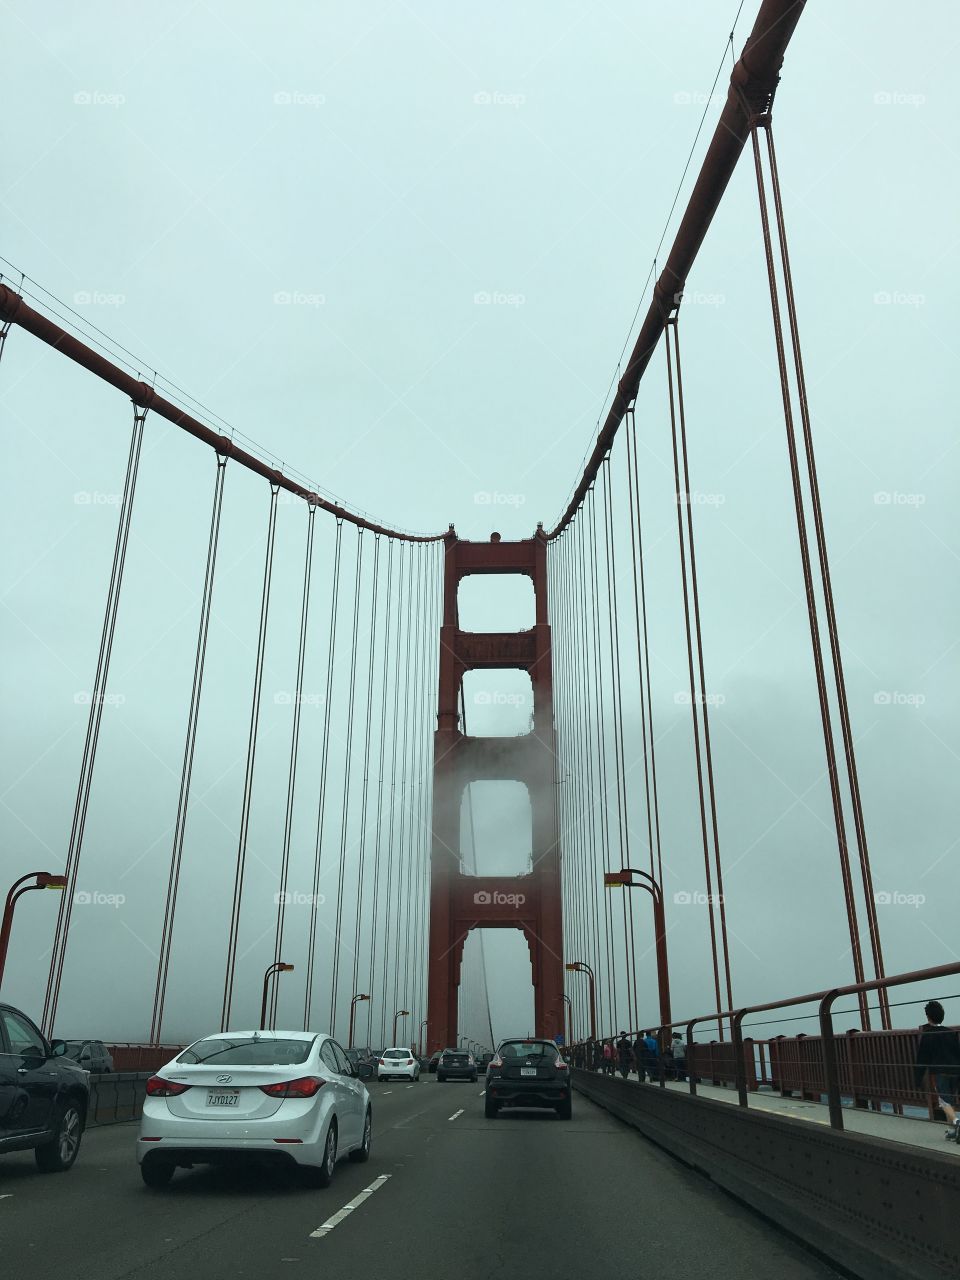 Golden Gate Bridge in a cloud of fog